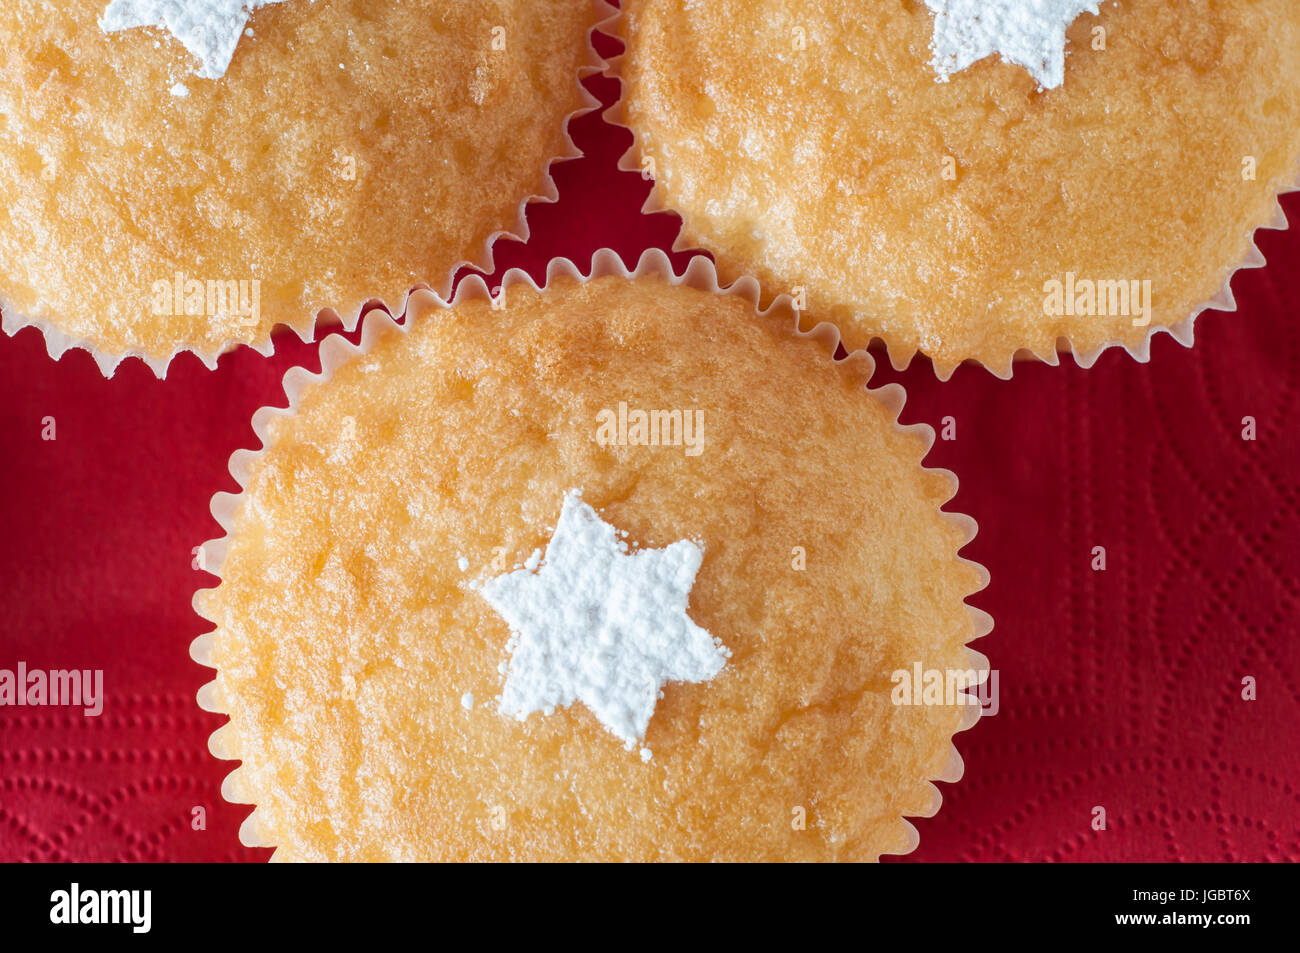 Drei Vanille Cupcakes auf einer roten Serviette Hintergrund, weit in die Höhe geschnellt und Gemeinkosten, dekoriert für Weihnachten mit Sternformen in weiß Puderzucker bestreut Stockfoto